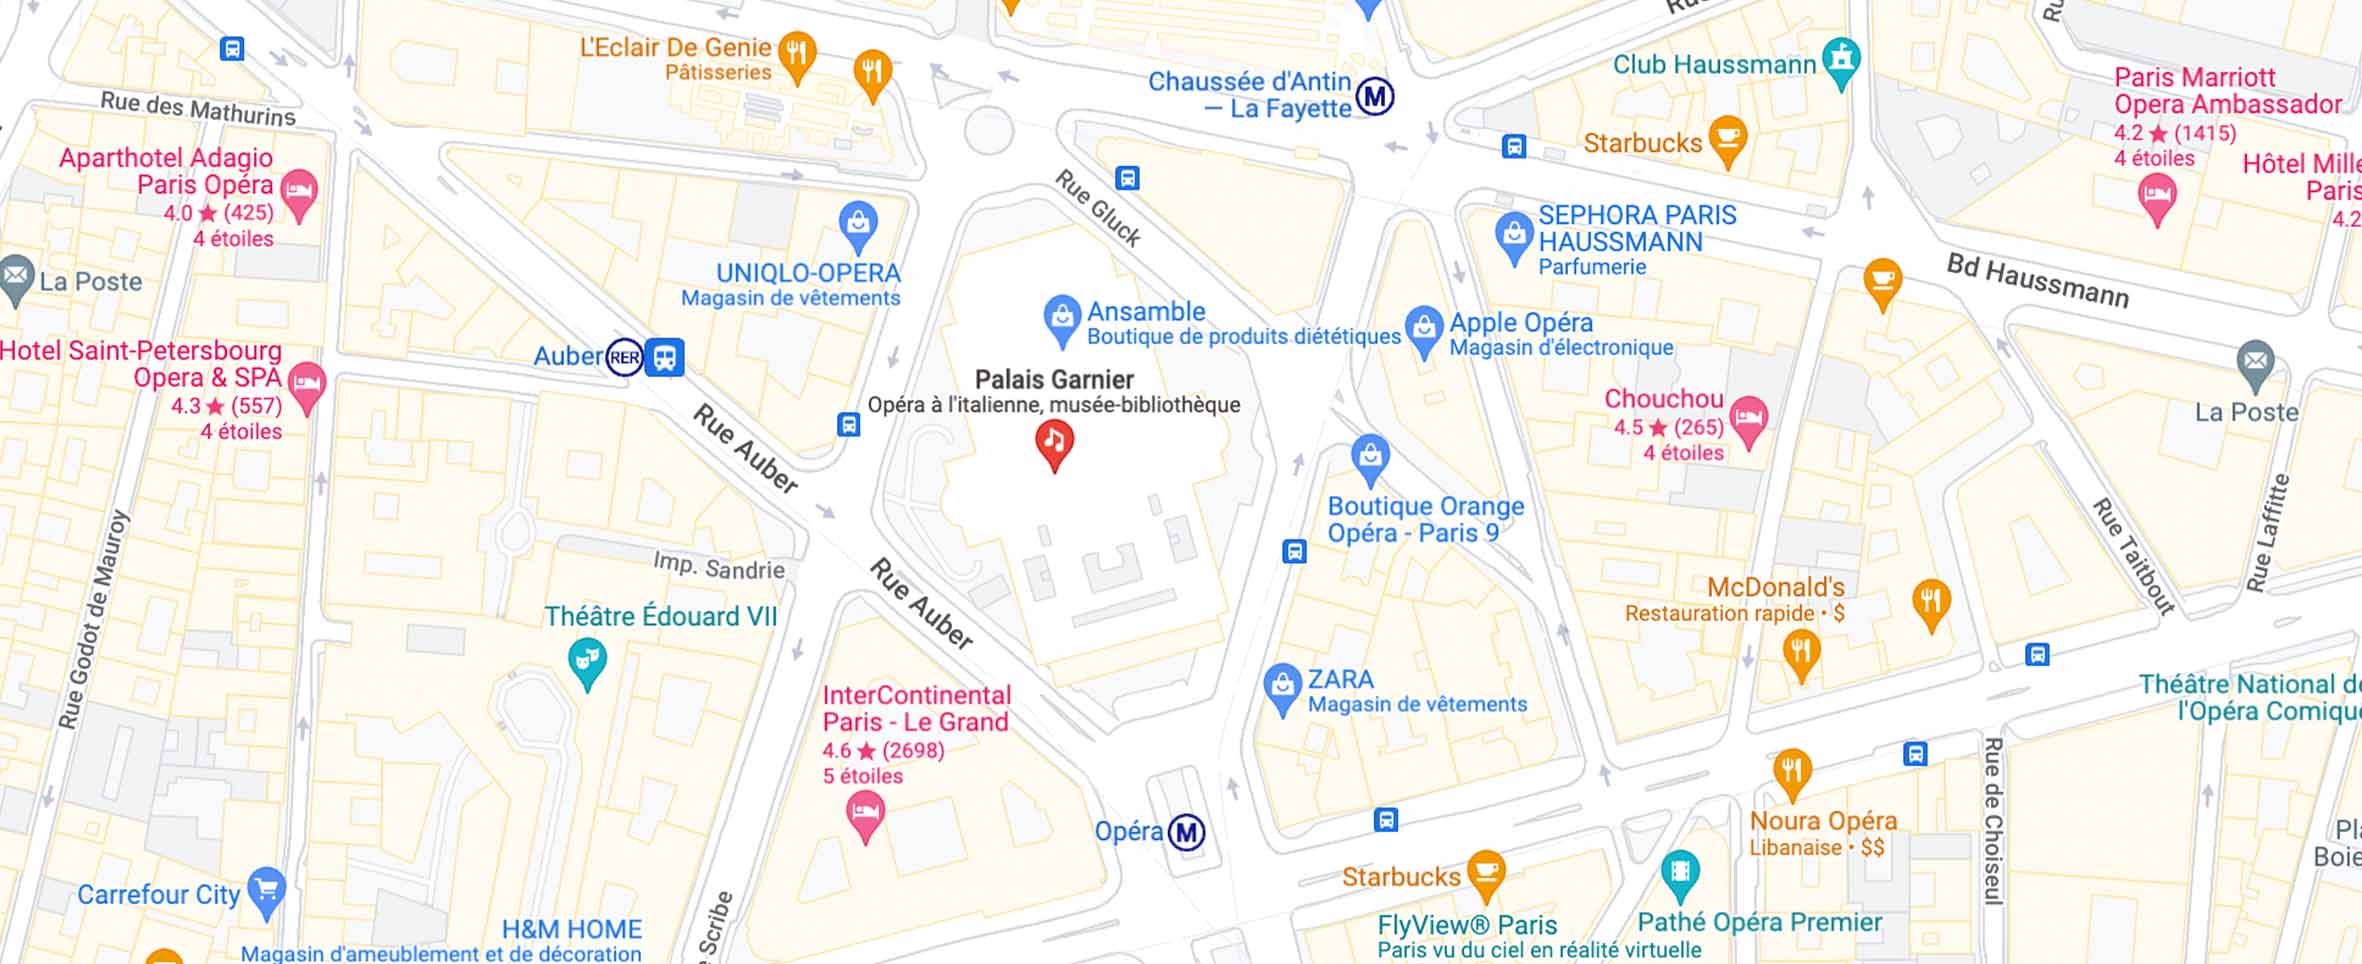 Mapa para llegar a la Ópera Garnier